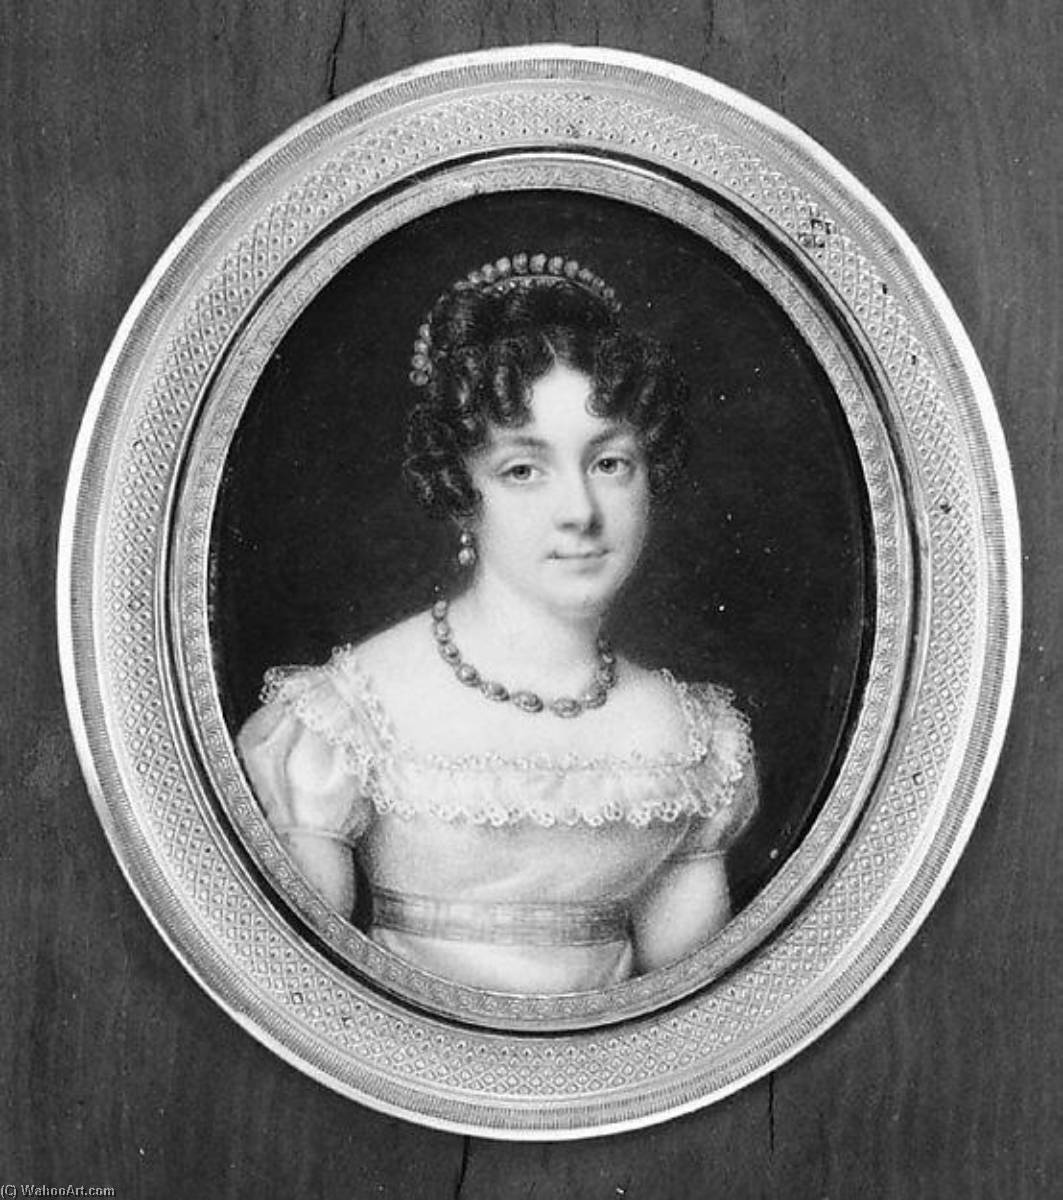 WikiOO.org - Encyclopedia of Fine Arts - Lukisan, Artwork Jean Baptist Isabey - Portrait of a Woman